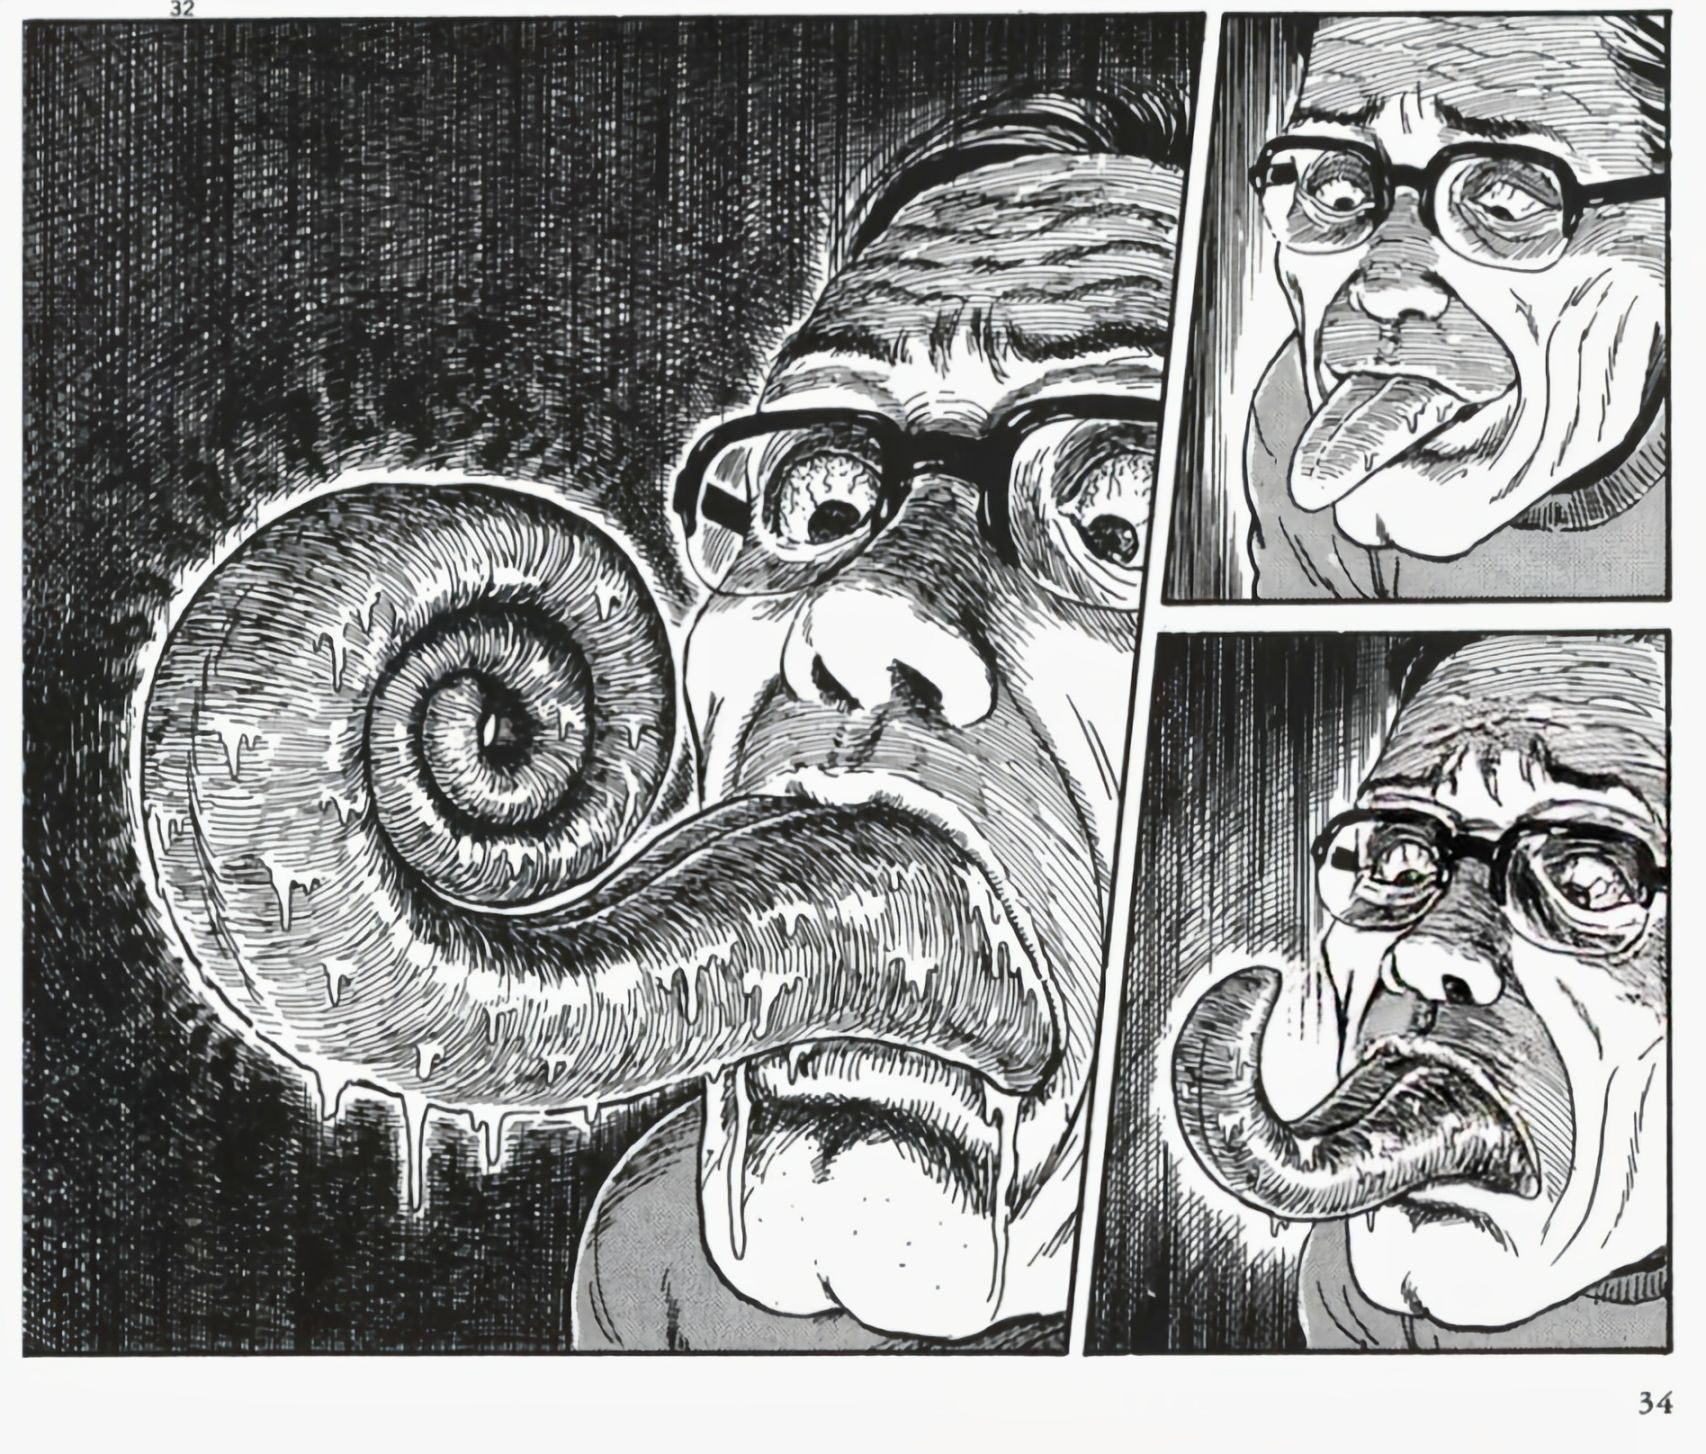 【影視動漫】伊藤潤二的頂級恐怖漫畫《漩渦》-第12張